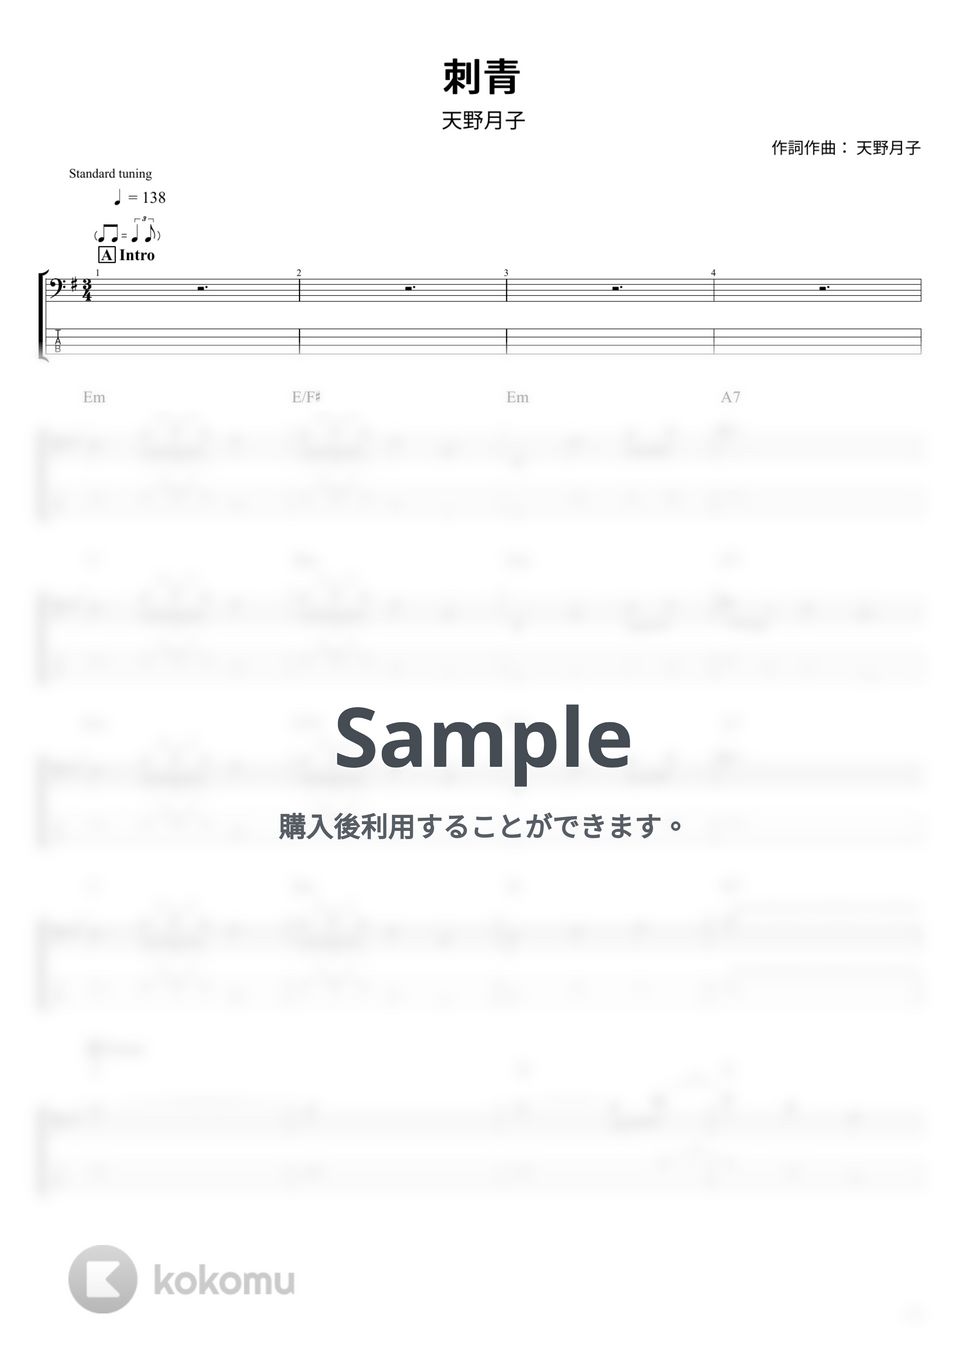 天野月子 - 刺青 (ベース Tab譜 4弦) by T's bass score